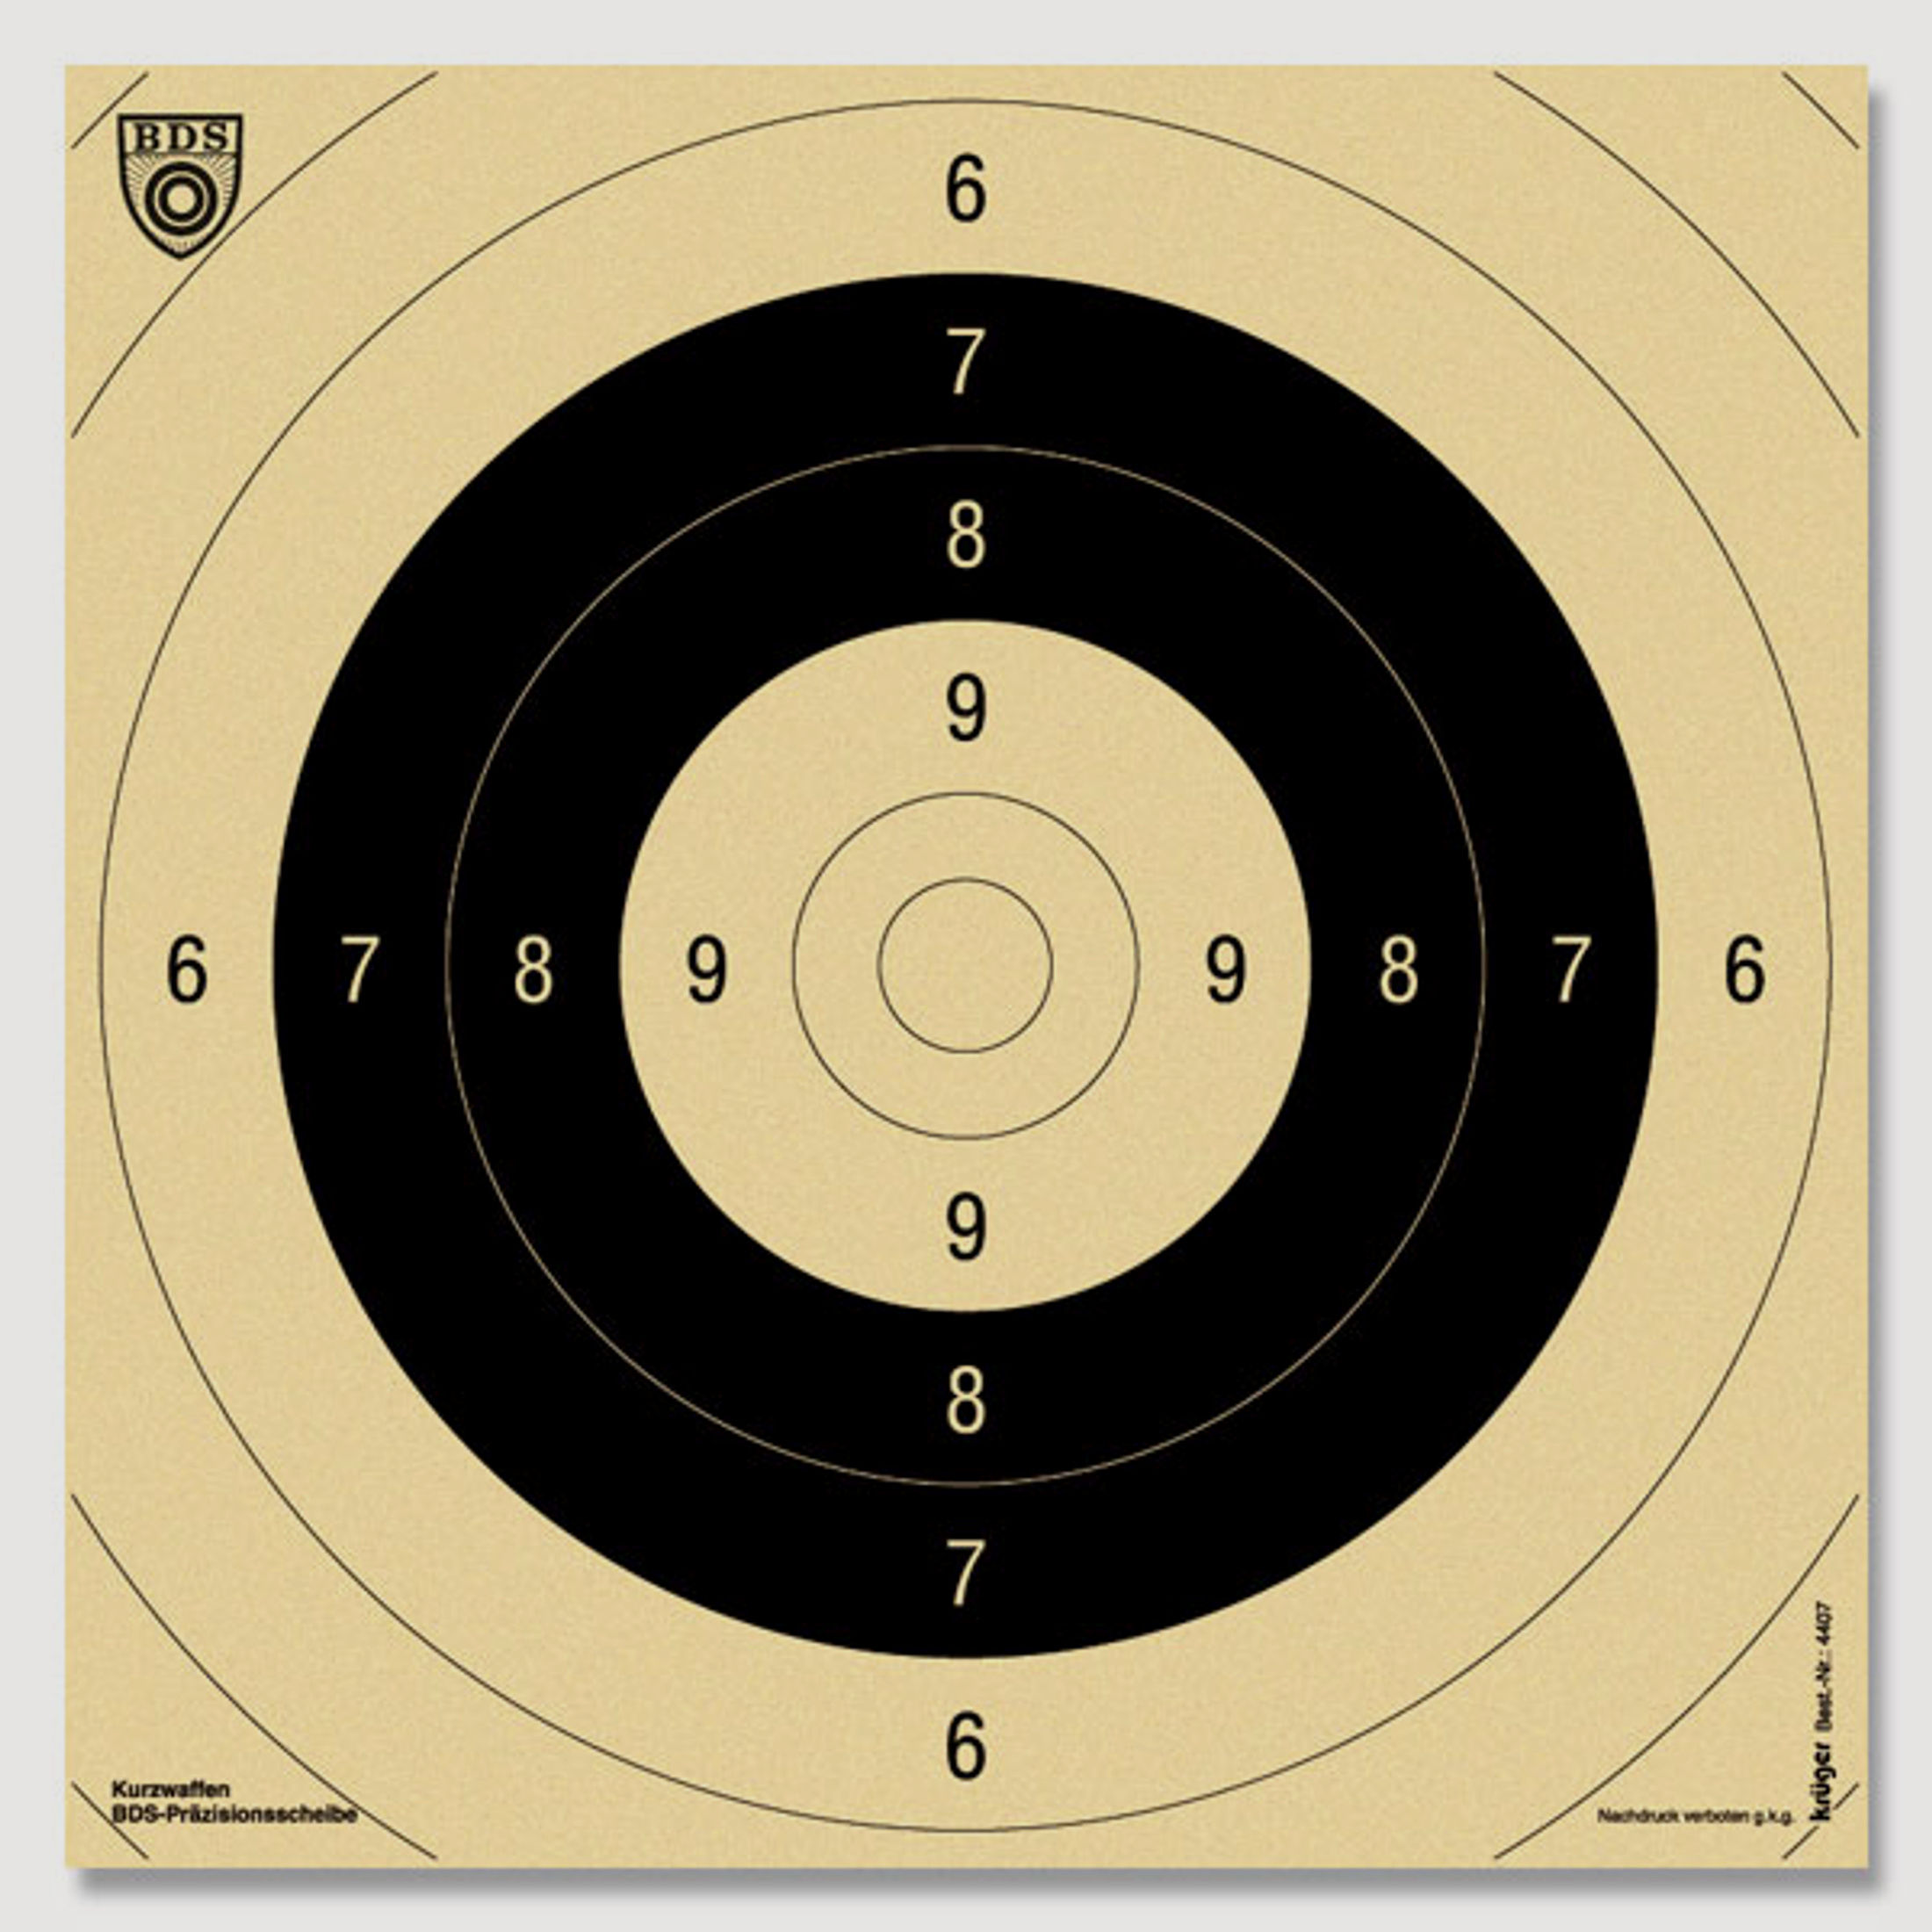 250 x Einsteckspiegel BDS Scheibe Nr. 9. Pistole 25m/MD 26x26cm | 200g/m2 chamois Schießscheibenkart